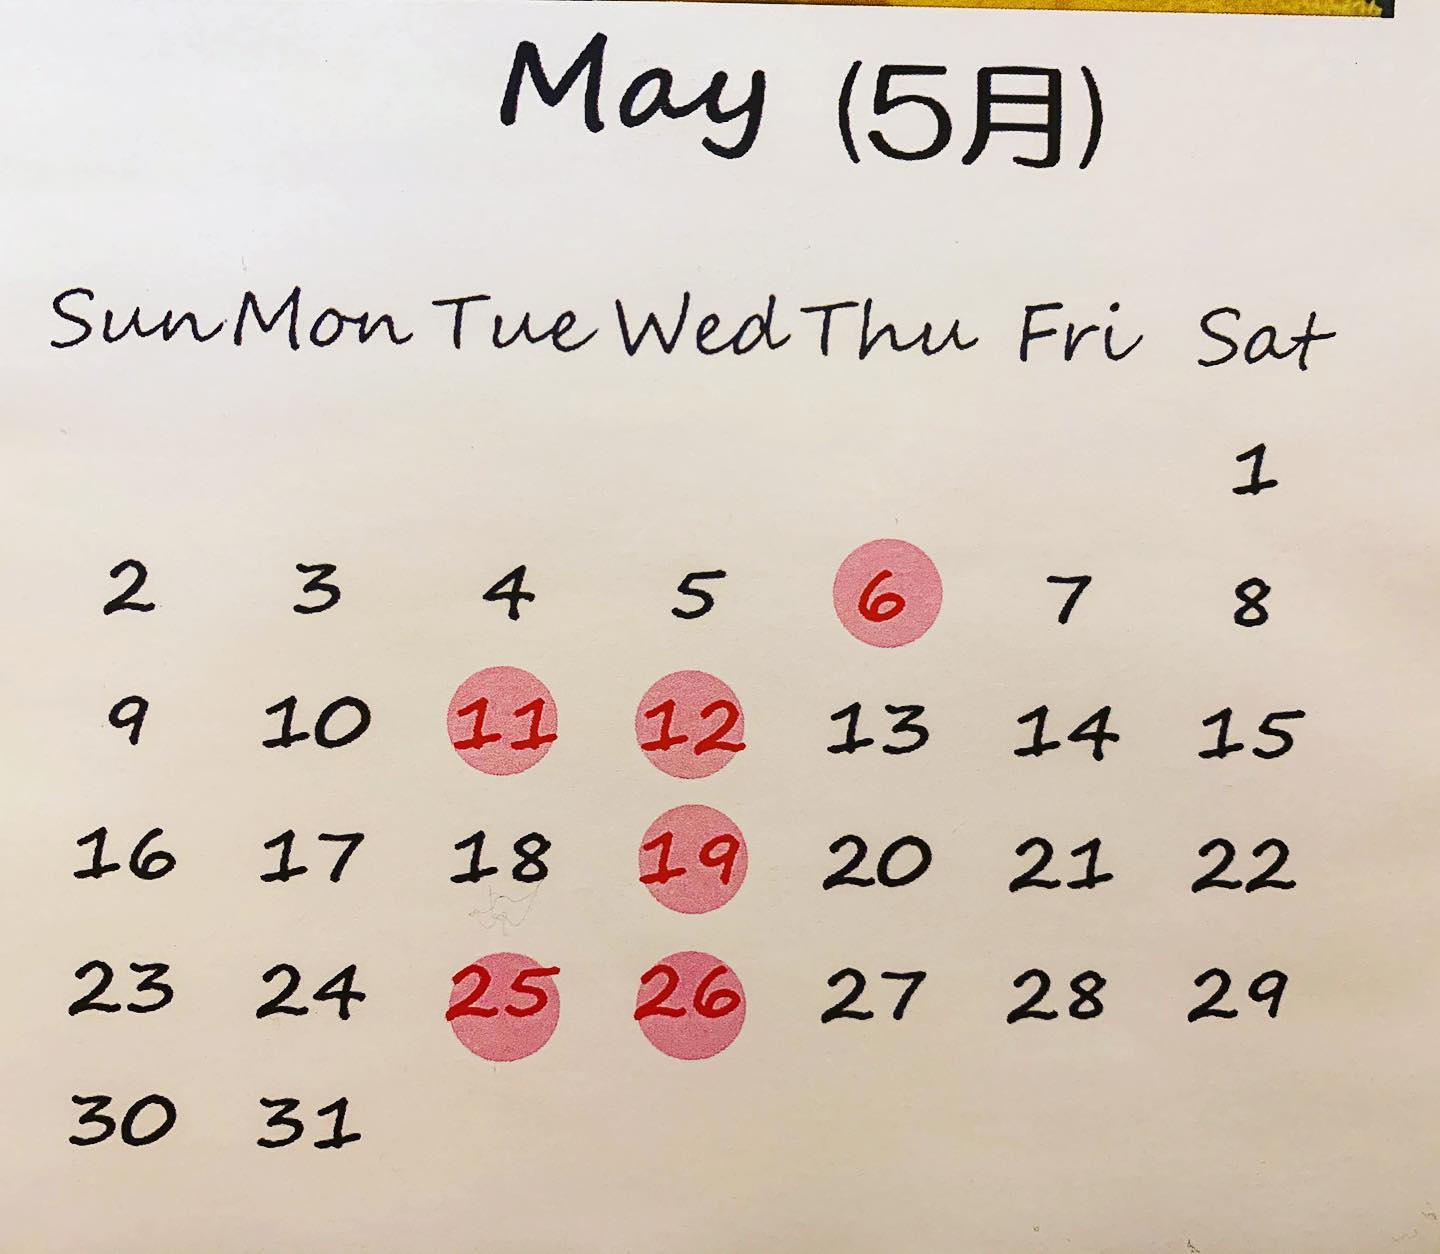 本日も沢山のお客様にご来店頂き誠にありがとうございました️

明日は、定休日でお休み頂きます‍♂️

5月の定休日のお知らせとなります

5月5日子どもの日は、水曜日ですが、営業させて頂きます。
6日木曜日が振替休日となります‍♂️
ご確認宜しくお願い致します️
*
新型コロナウィルス感染症対策といたしまして、入り口にございます、アルコール消毒液と赤外線温度センサーをご使用下さいませ。

ご入店の際は、マスクの着用を宜しくお願い致します。

お並び頂く際は、ソーシャルディスタンスのご協力を宜しくお願い致します。

出来るだけ少人数様でのお買い物のご協力を宜しくお願い致します。

皆様には、大変ご迷惑お掛け致しますが、沢山のお客様に安心してお買い物を楽しんで頂けますようご理解ご協力を宜しくお願い致します。
*



こどもの日